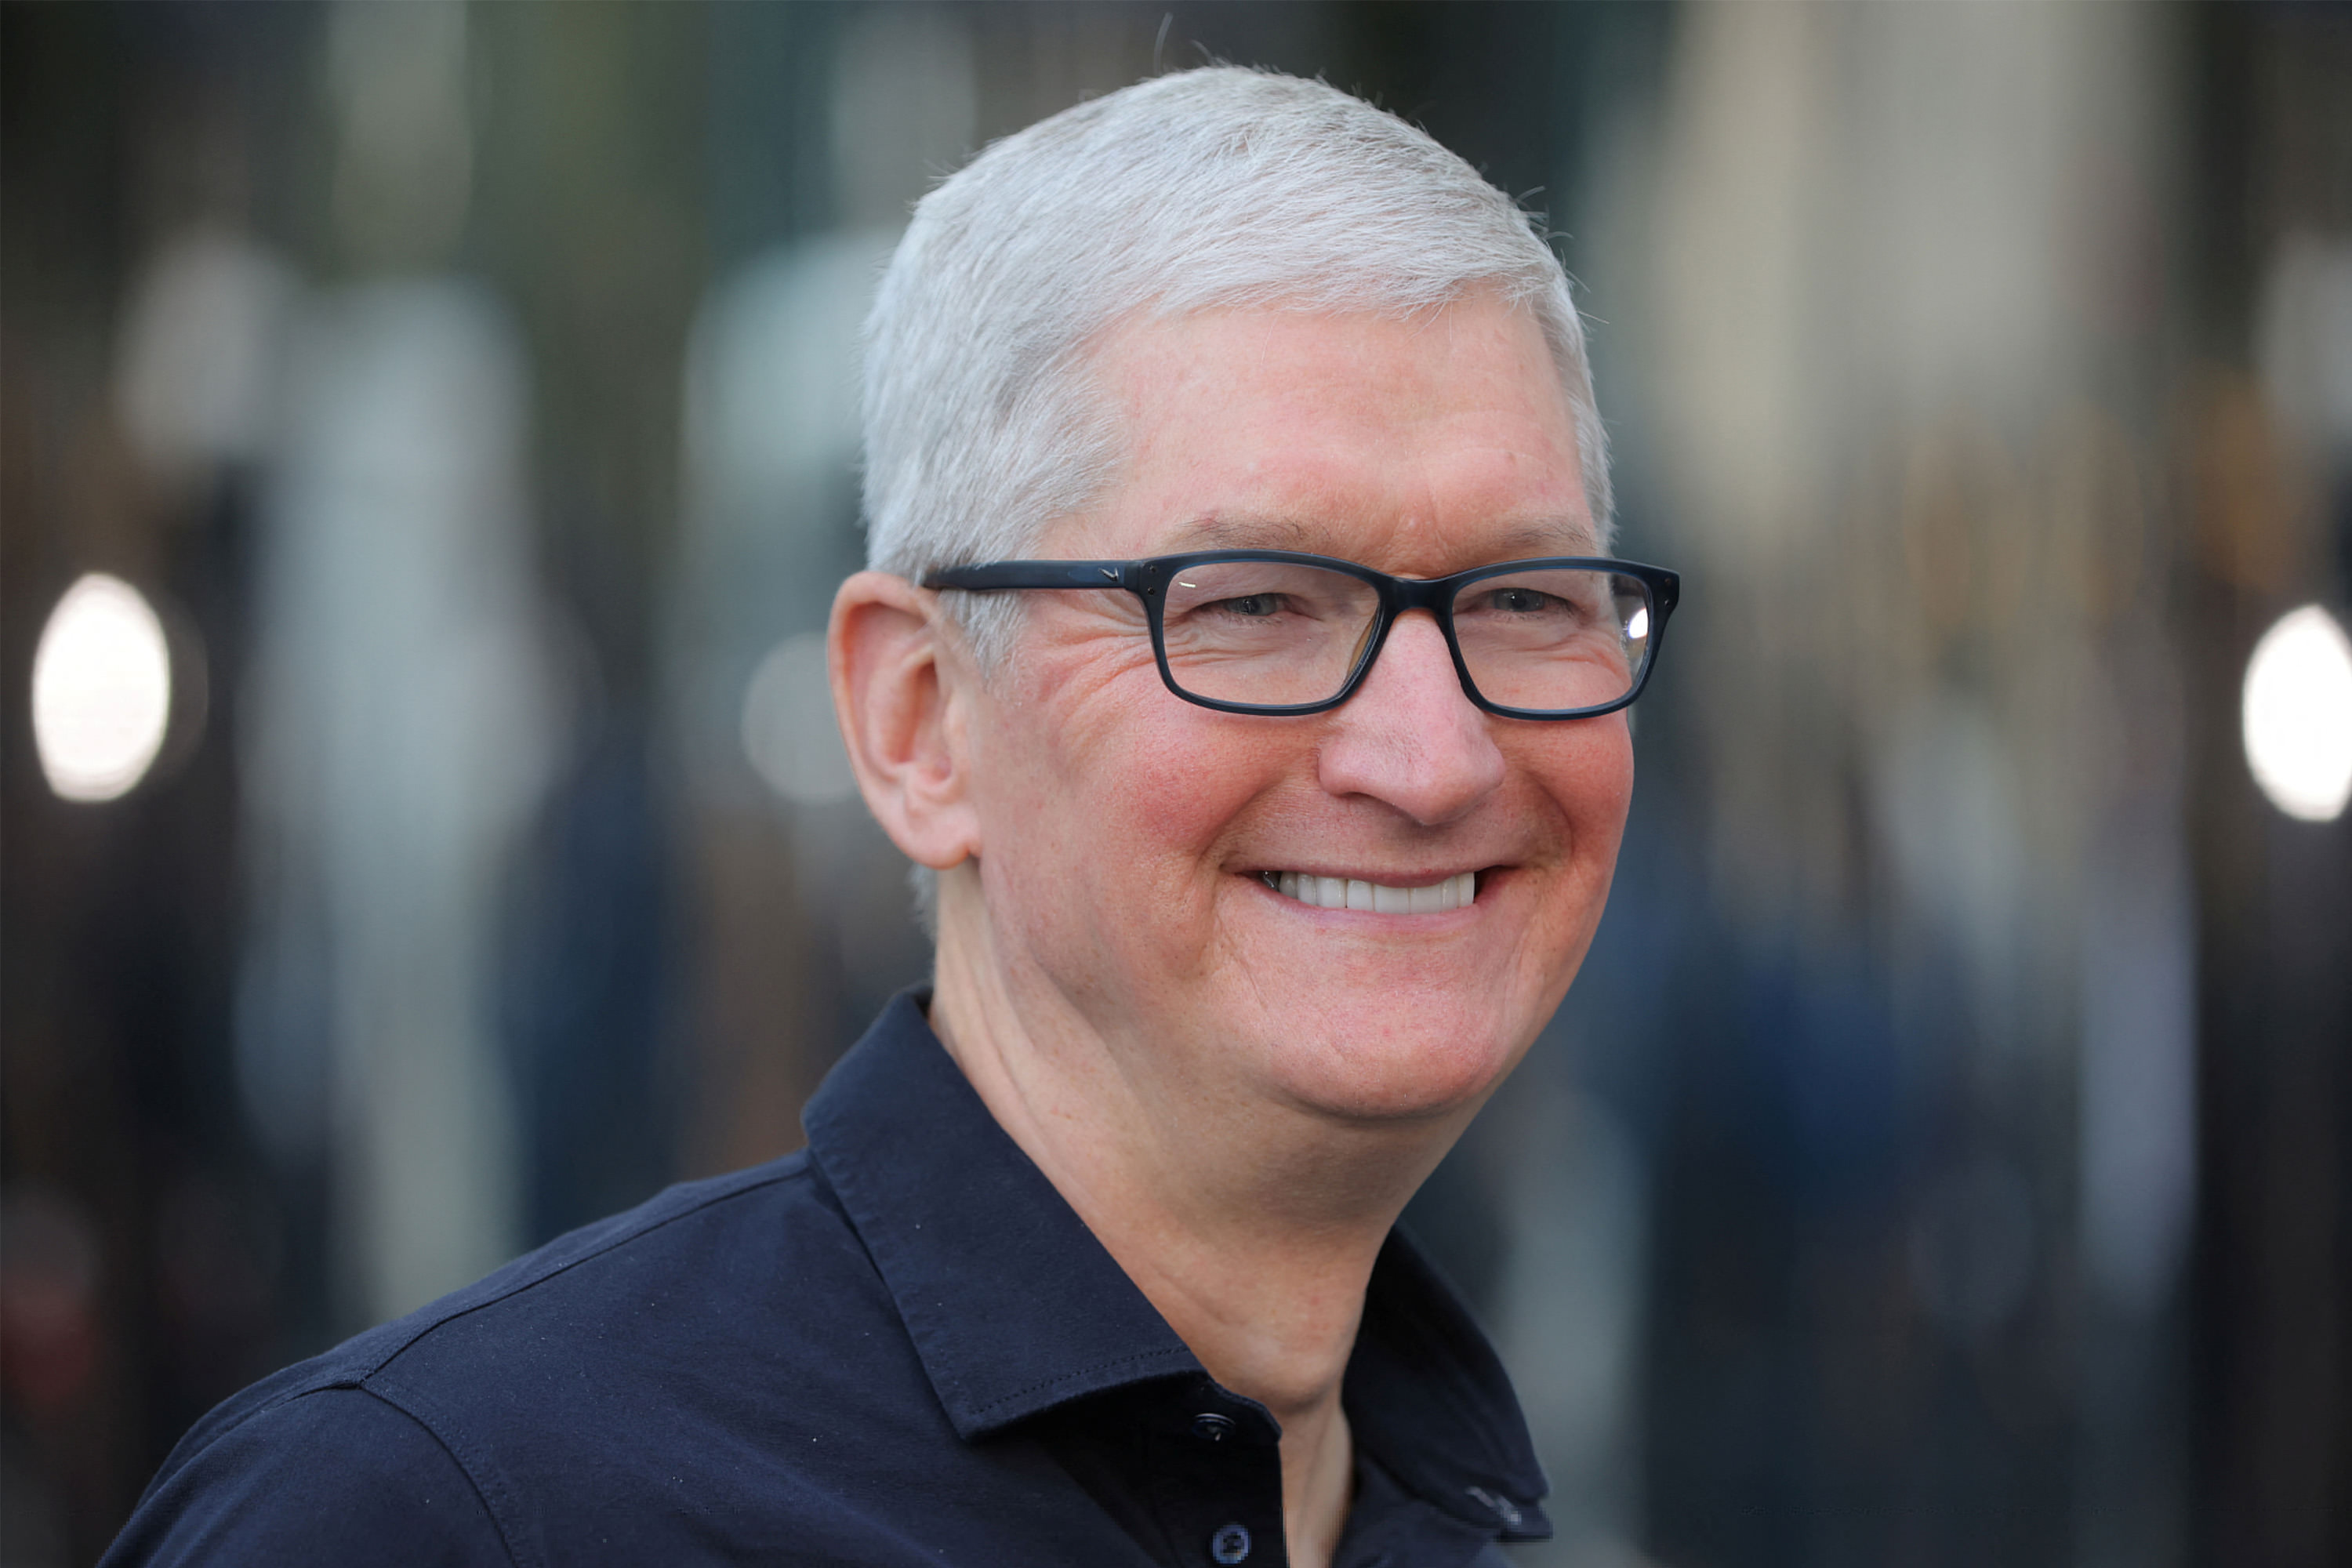 لبخند تیم کوک مدیر عامل اپل/ چهره شاد تیم کوک با عینک و پیراهن مشکی